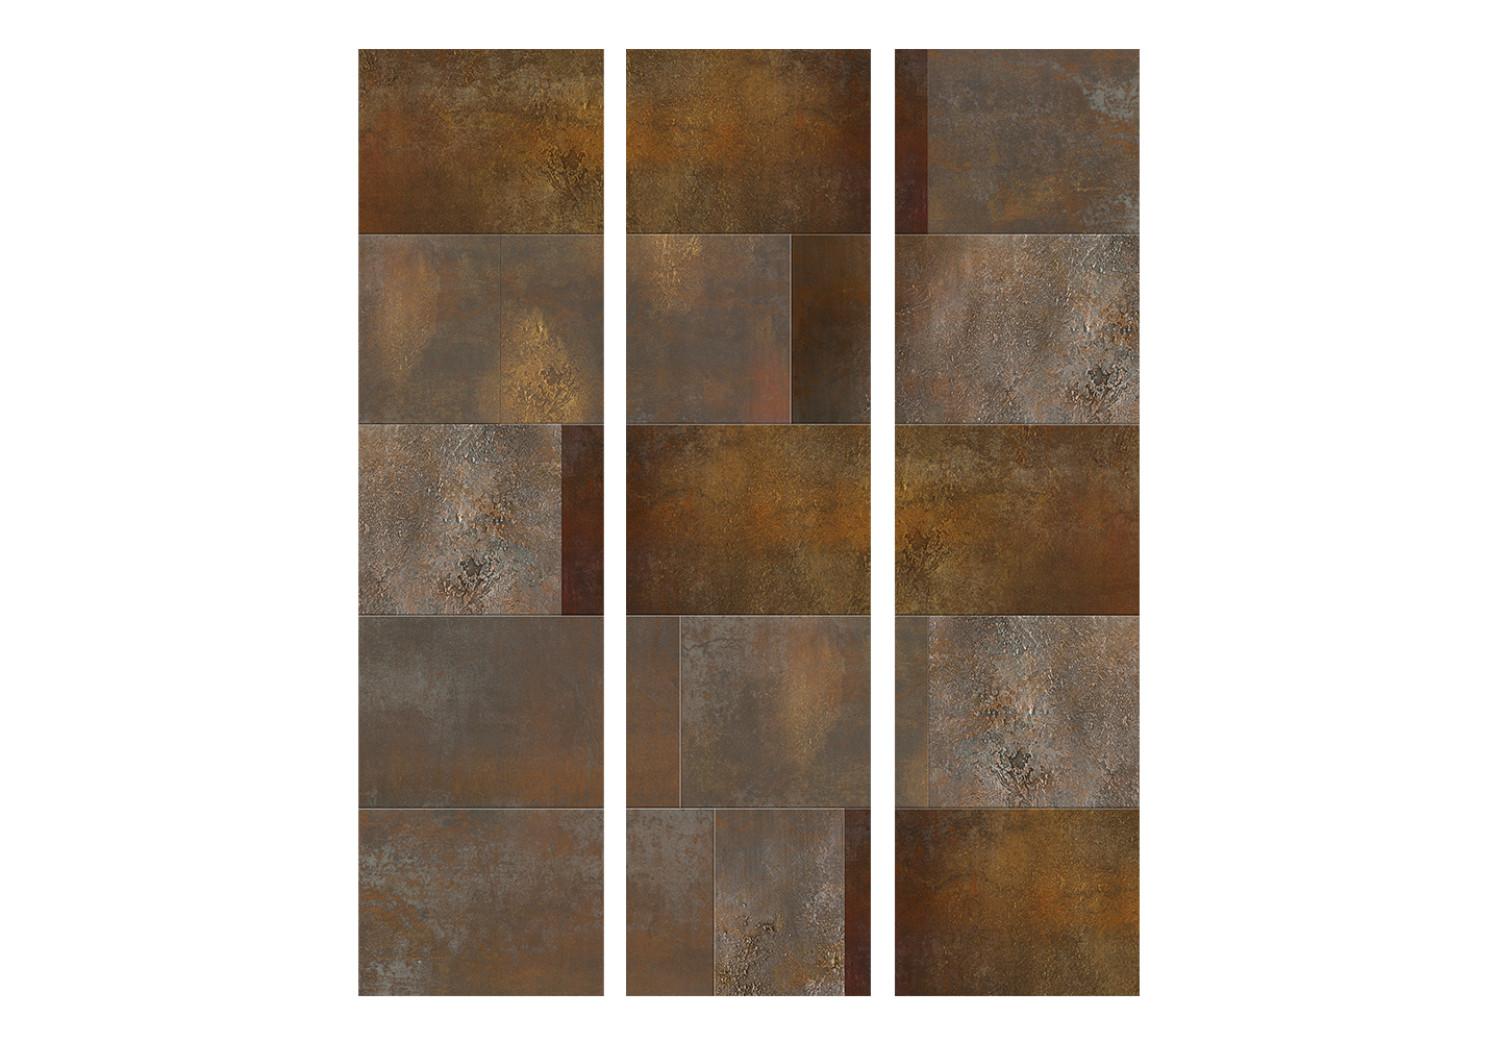 Biombo Cascada Dorada - textura de metal oxidado con azulejos cuadrados